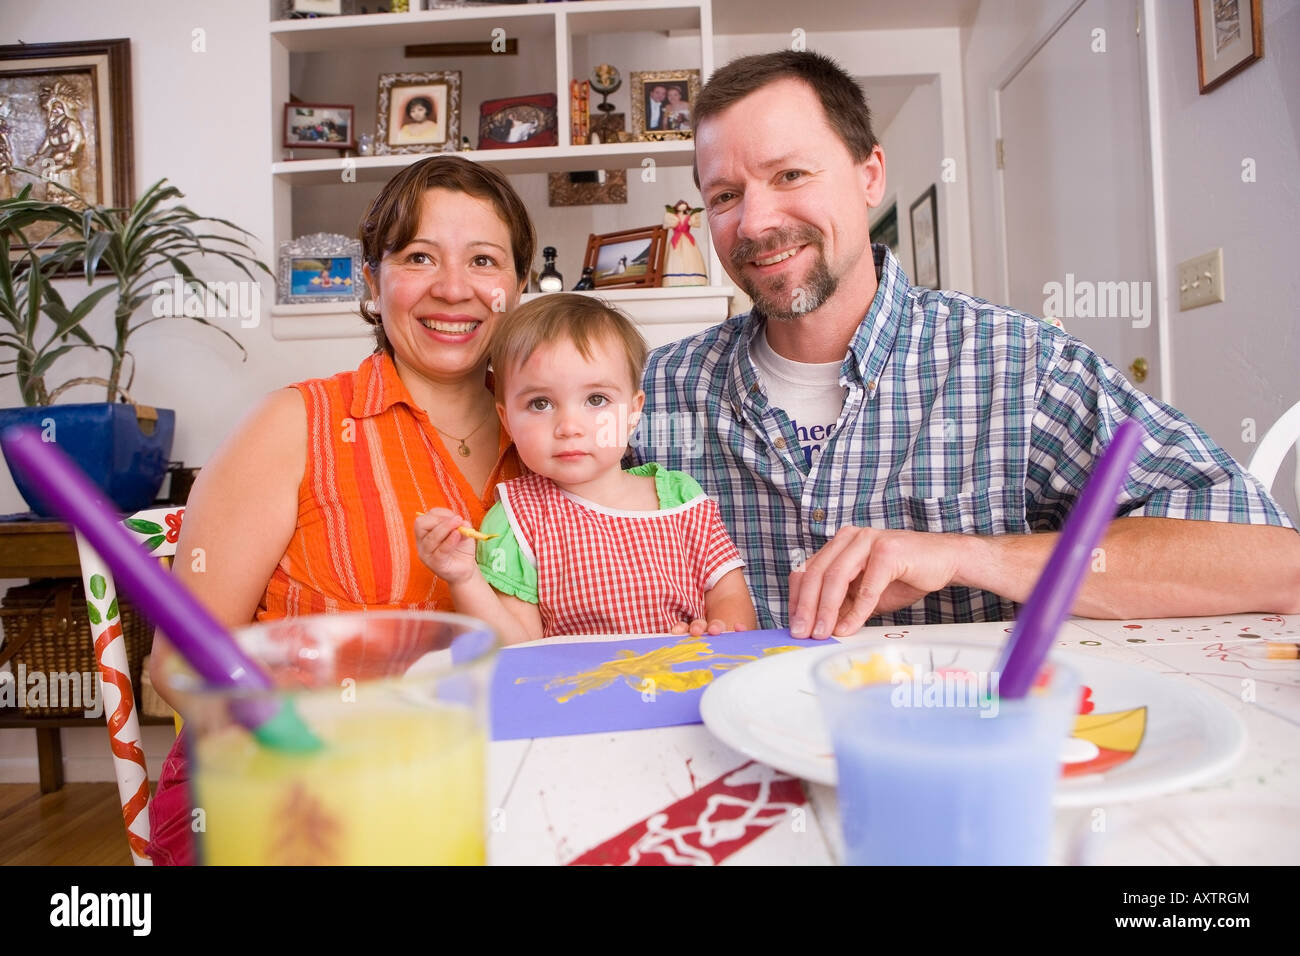 Zwei Jahre altes Mädchen malen mit Farben Poster am Küchentisch mit zwei Eltern helfen Alaska USA Stockfoto